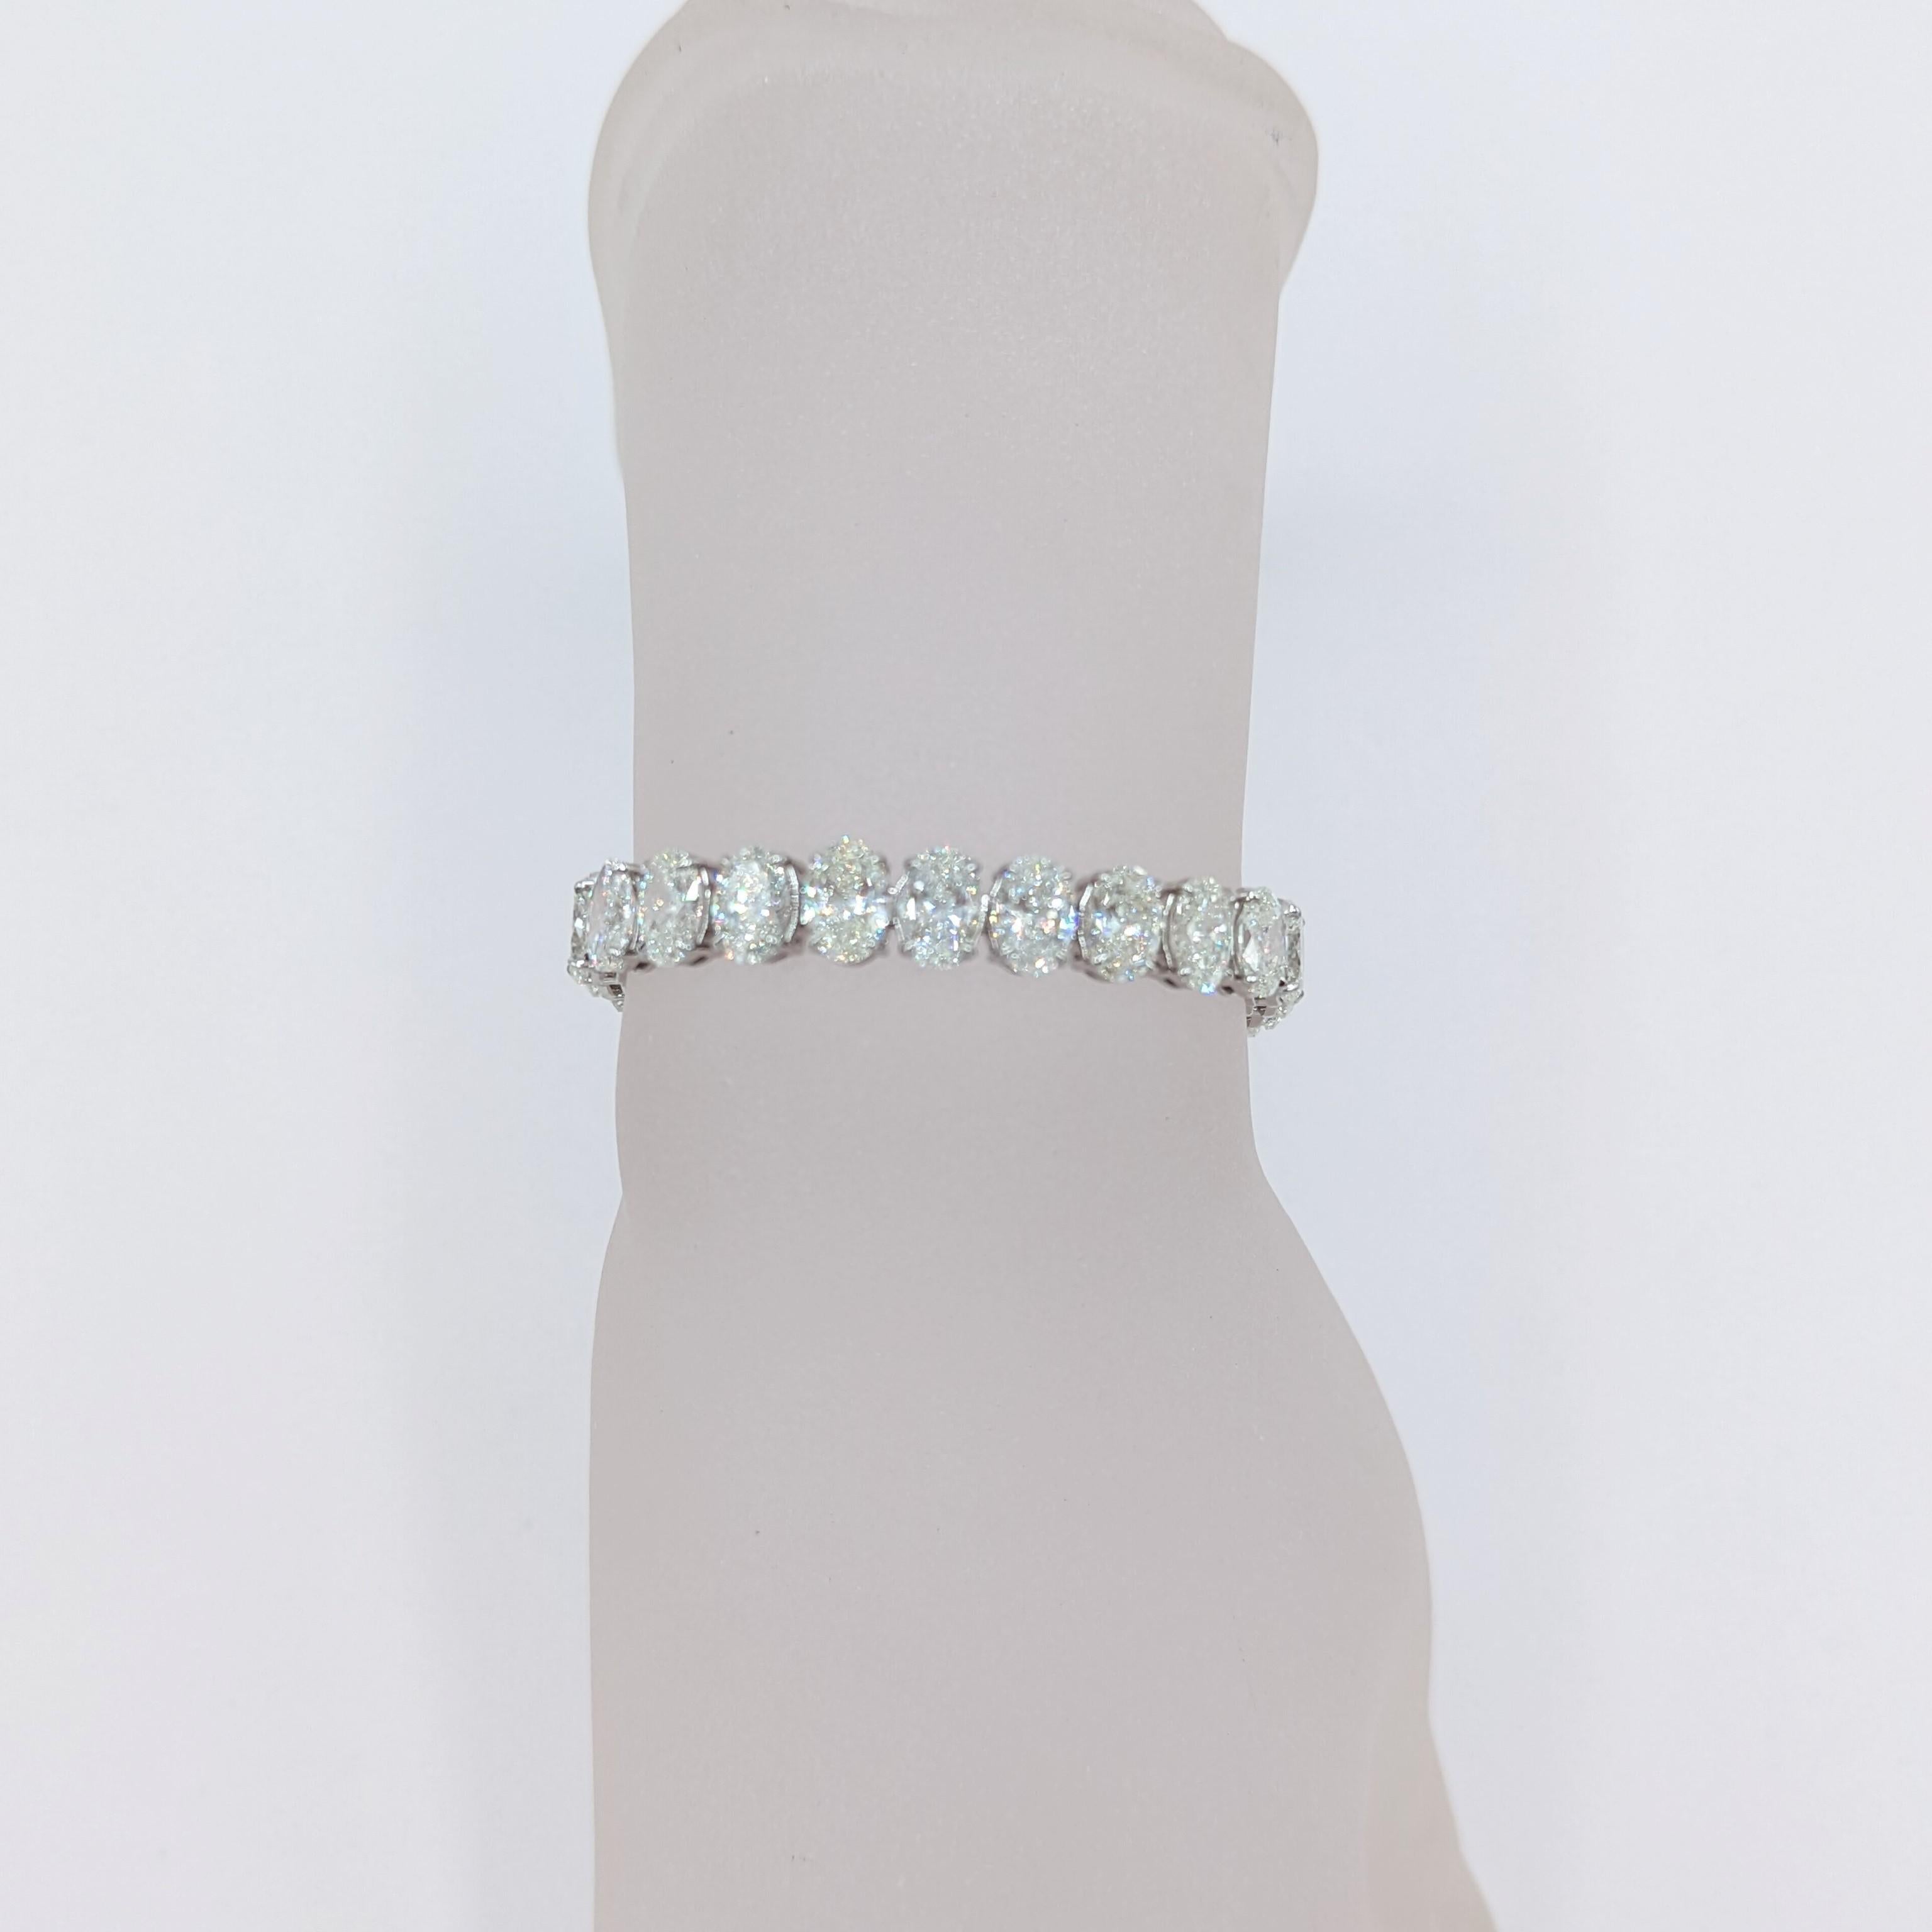 Atemberaubende 31,19 ct. weiße Diamanten Ovale G-I Farbe, VS2- SI2 Klarheit.  Insgesamt 31 Steine. Handgefertigt in Platin.  Die Länge beträgt 7,25